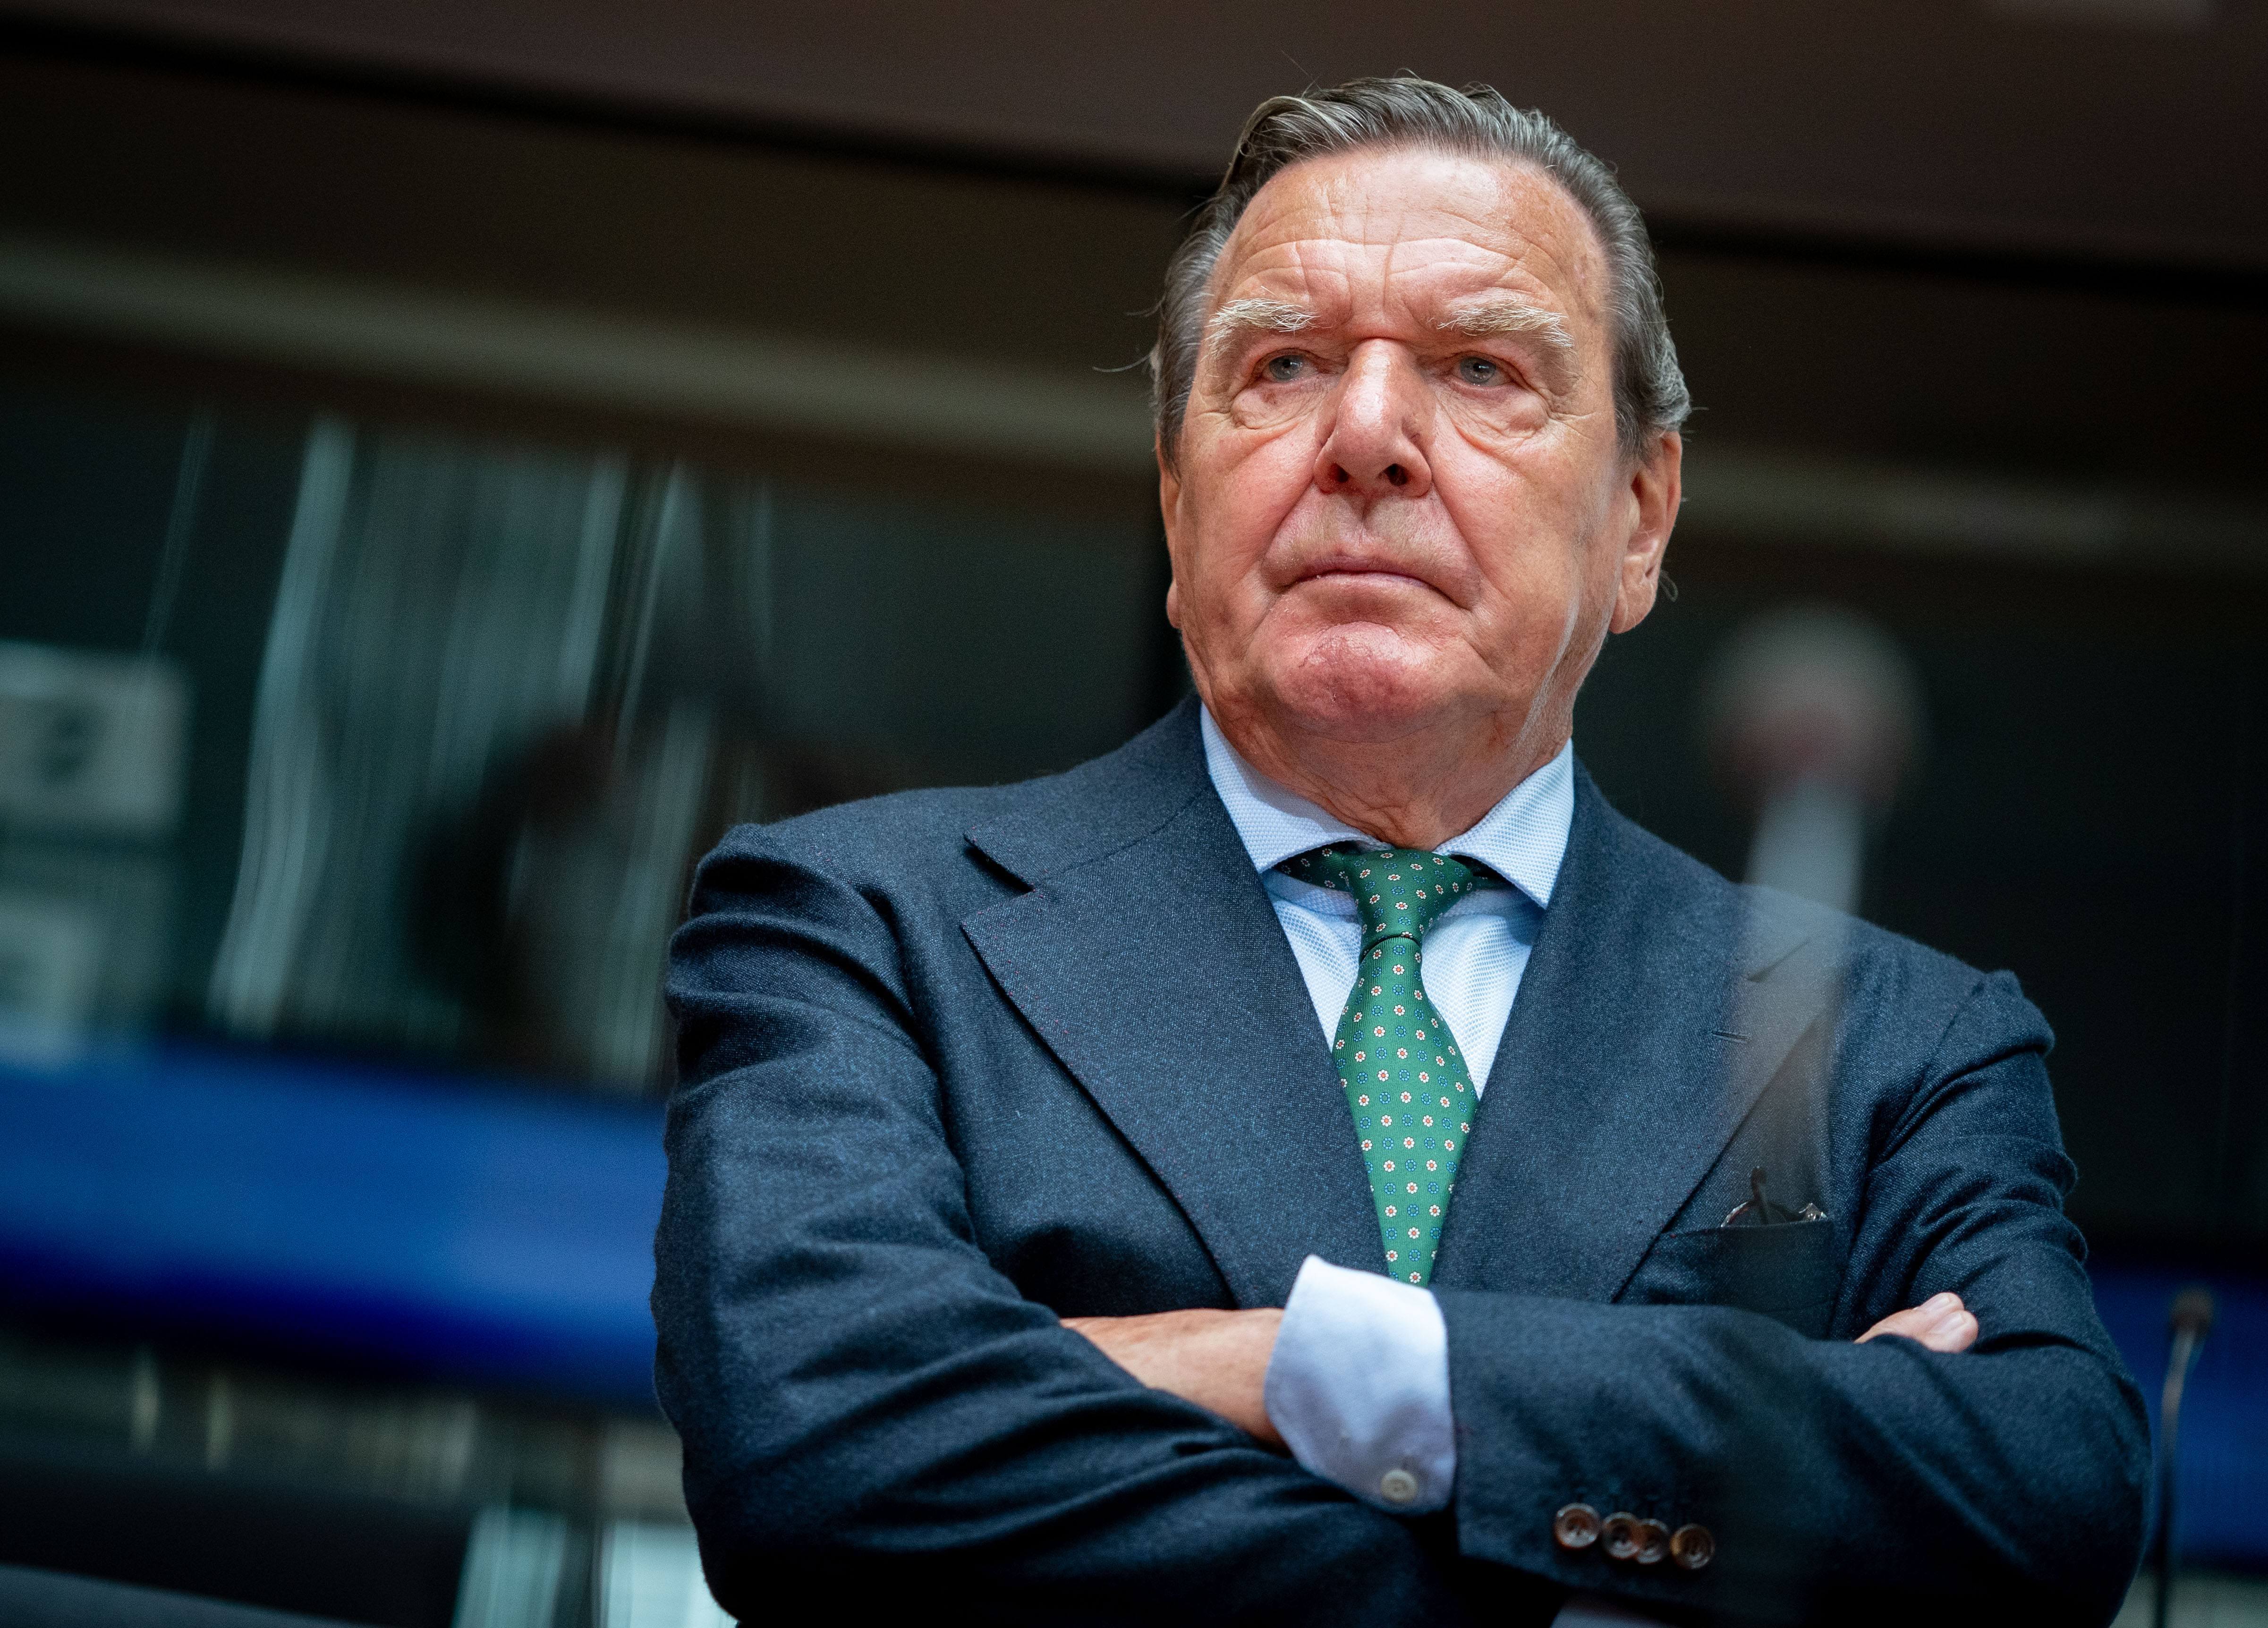 Front comú d'Alemanya i la UE contra l'excanceller Schröder pels lligams amb Rússia